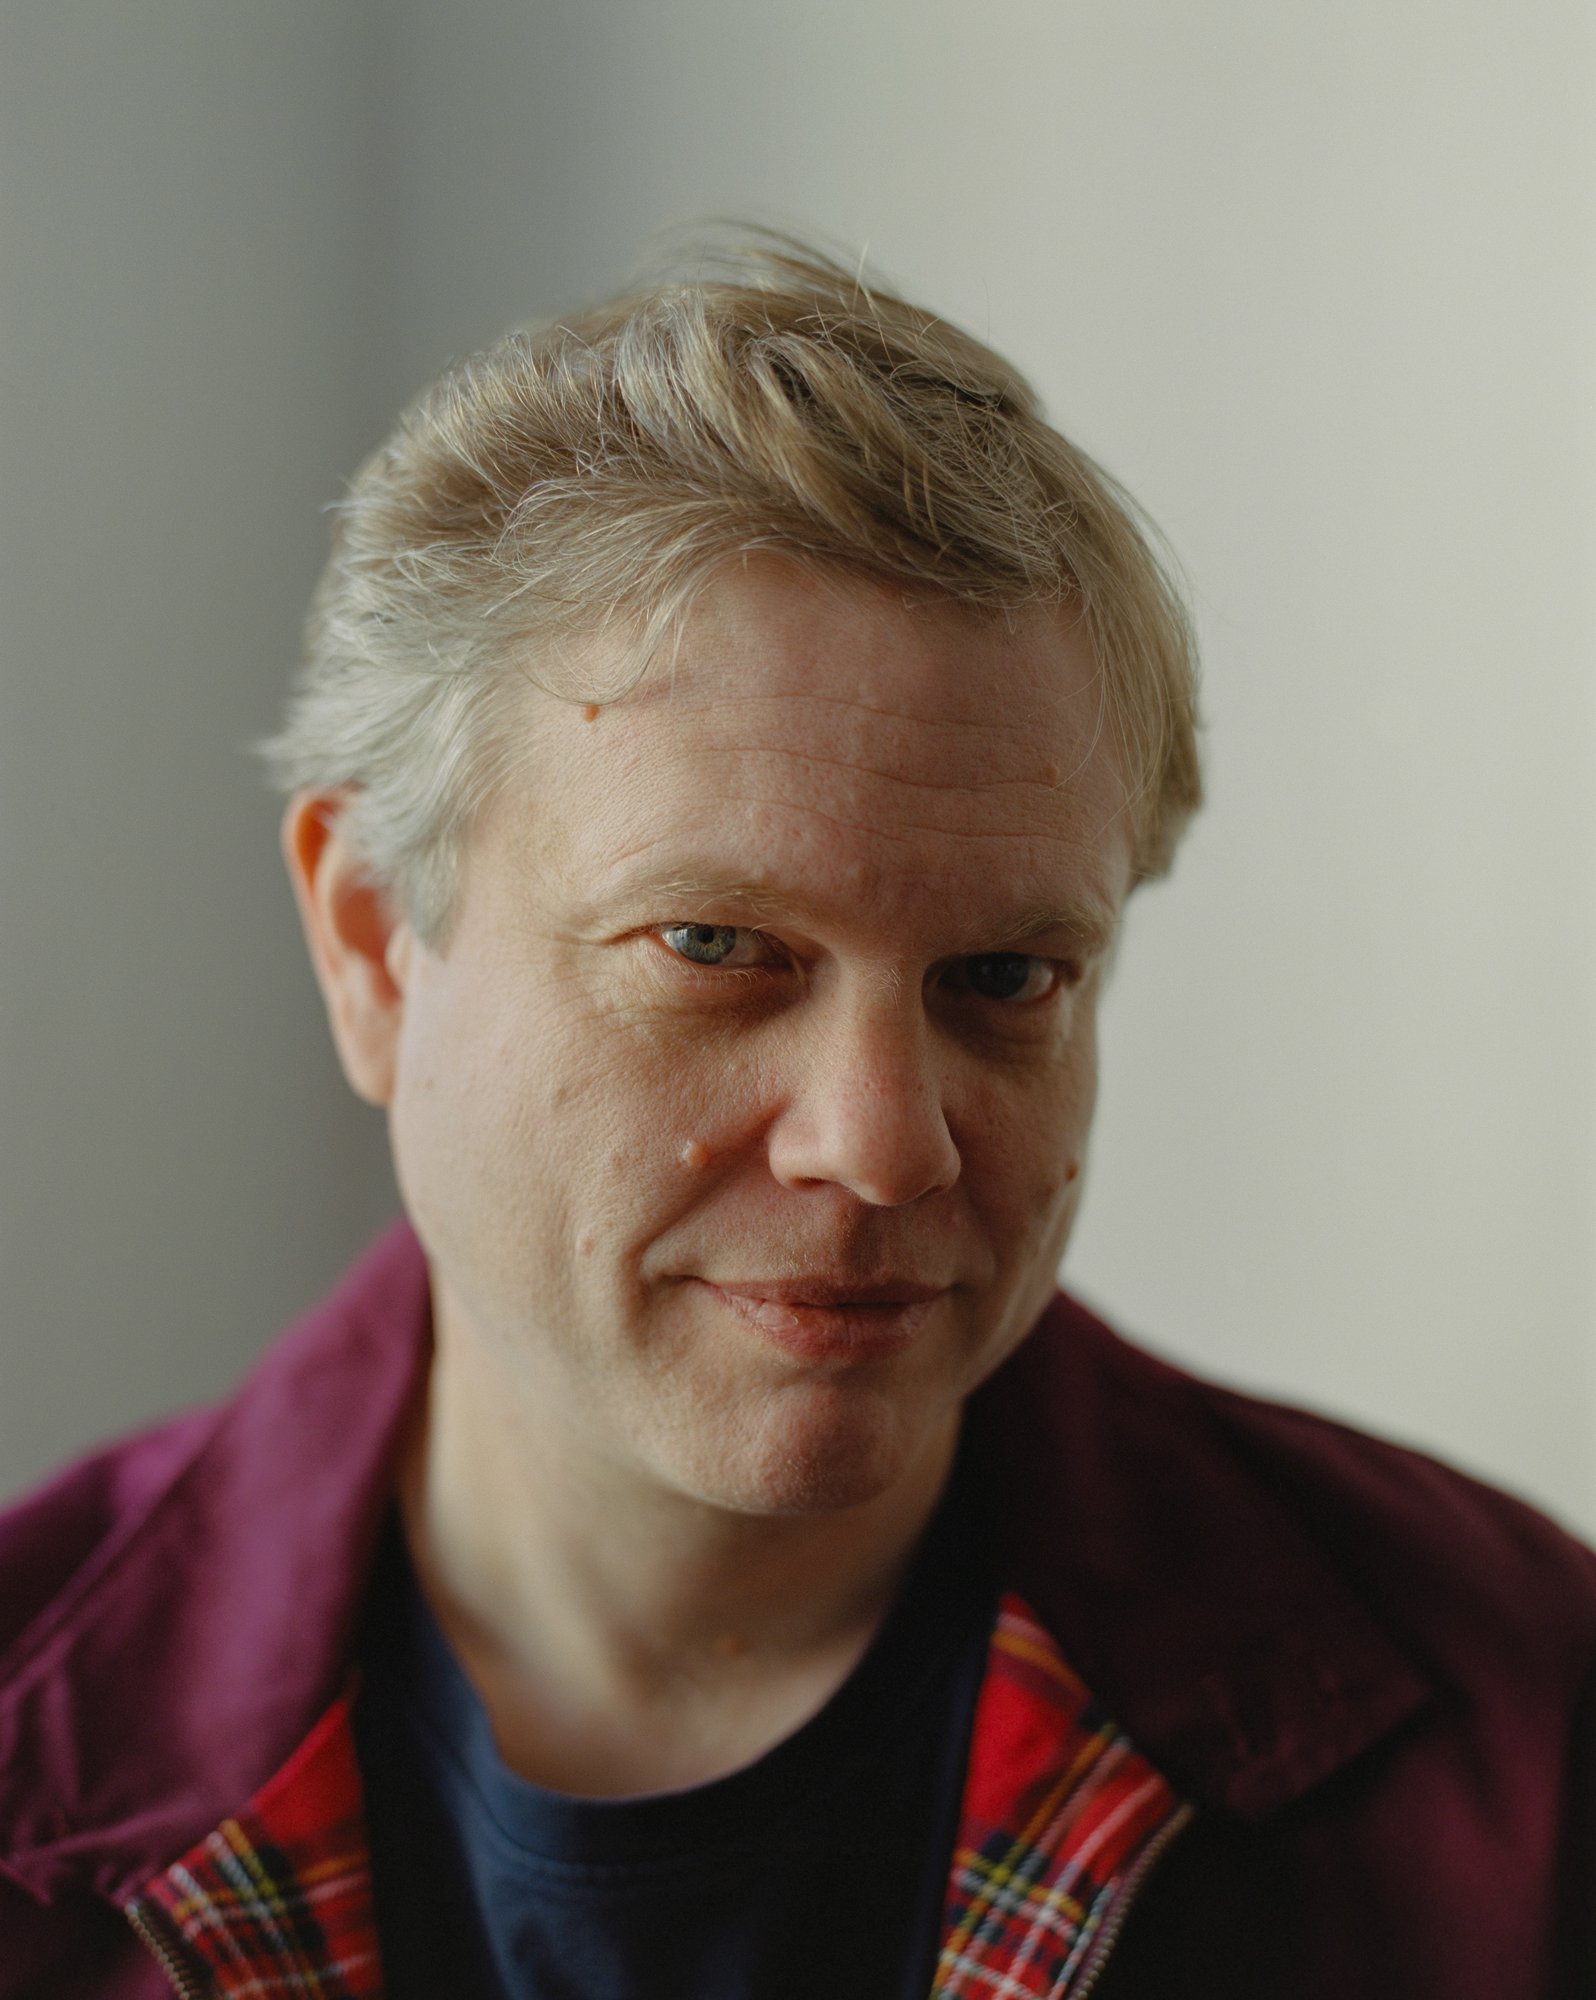   Writer Matthijs de Ridder   for De Standaard  